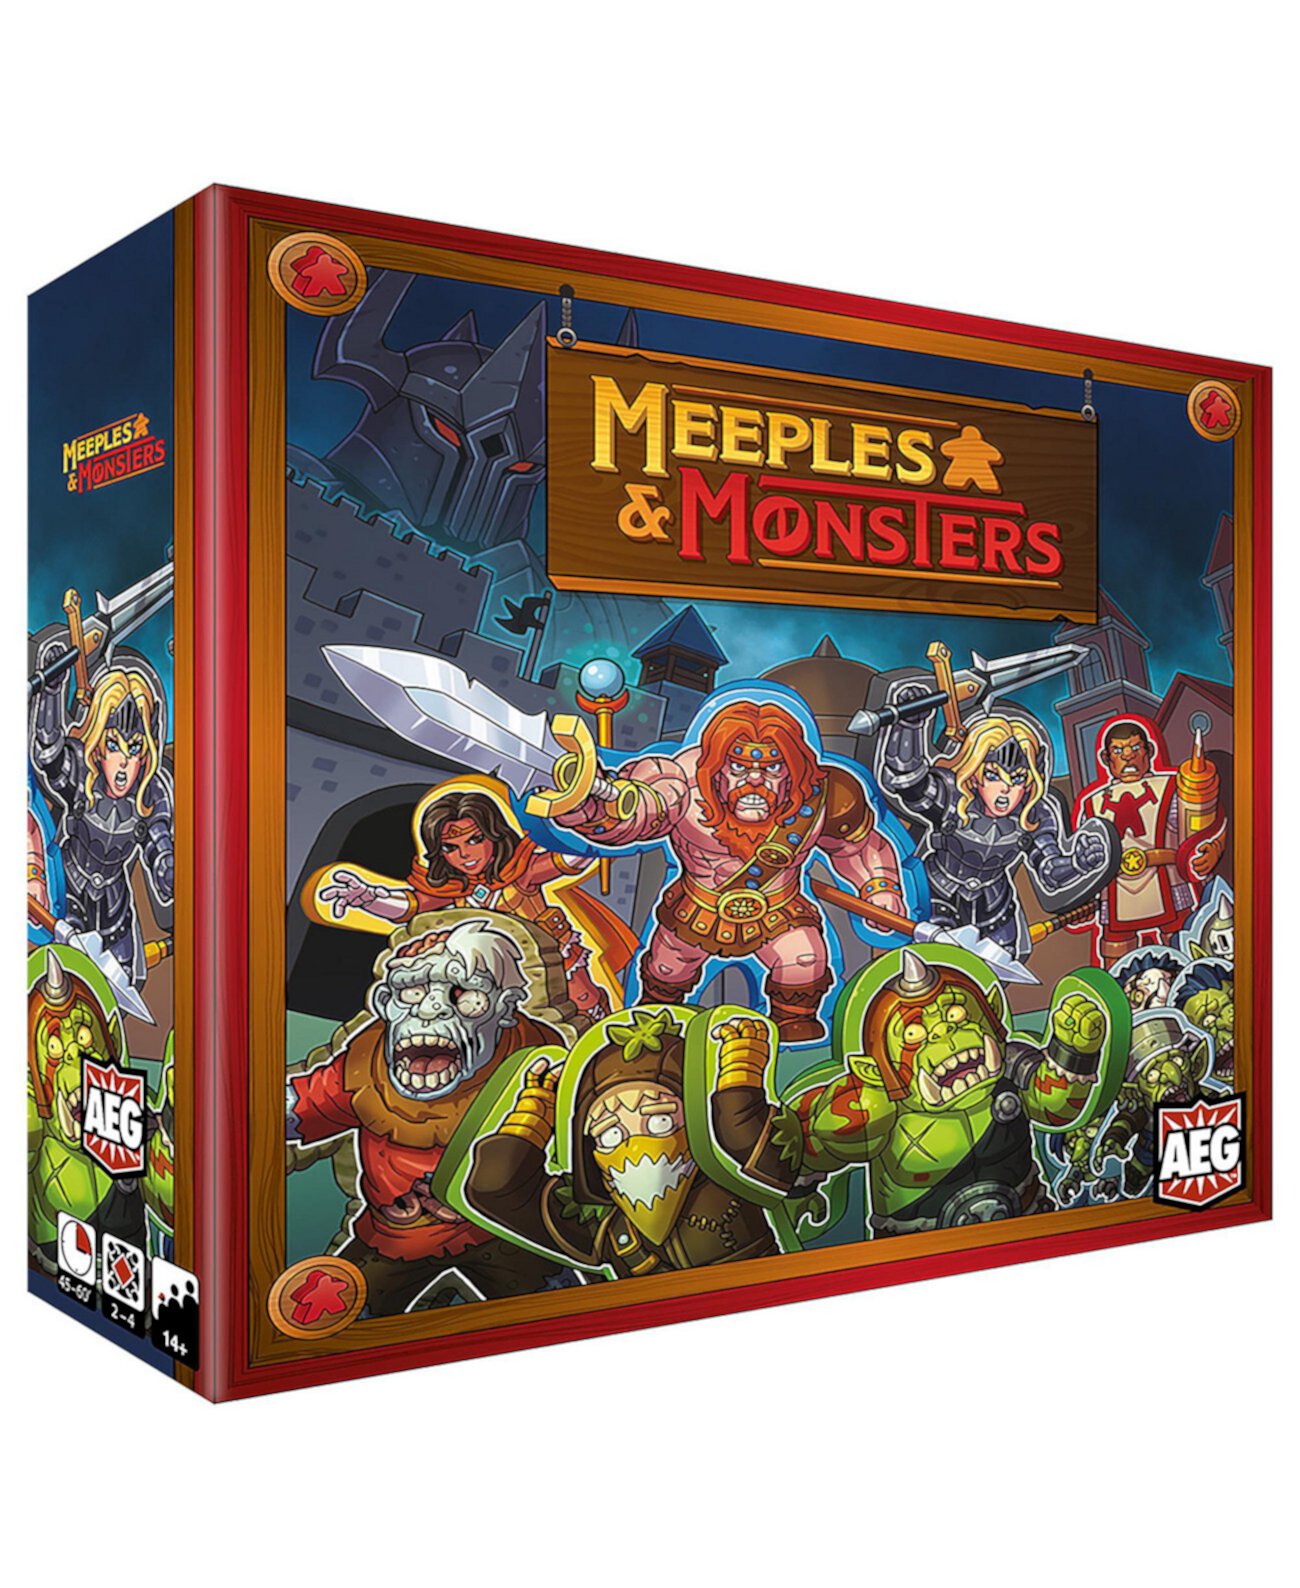 Средневековая фэнтезийная настольная игра AEG Meeples Monsters Alderac Entertainment Group